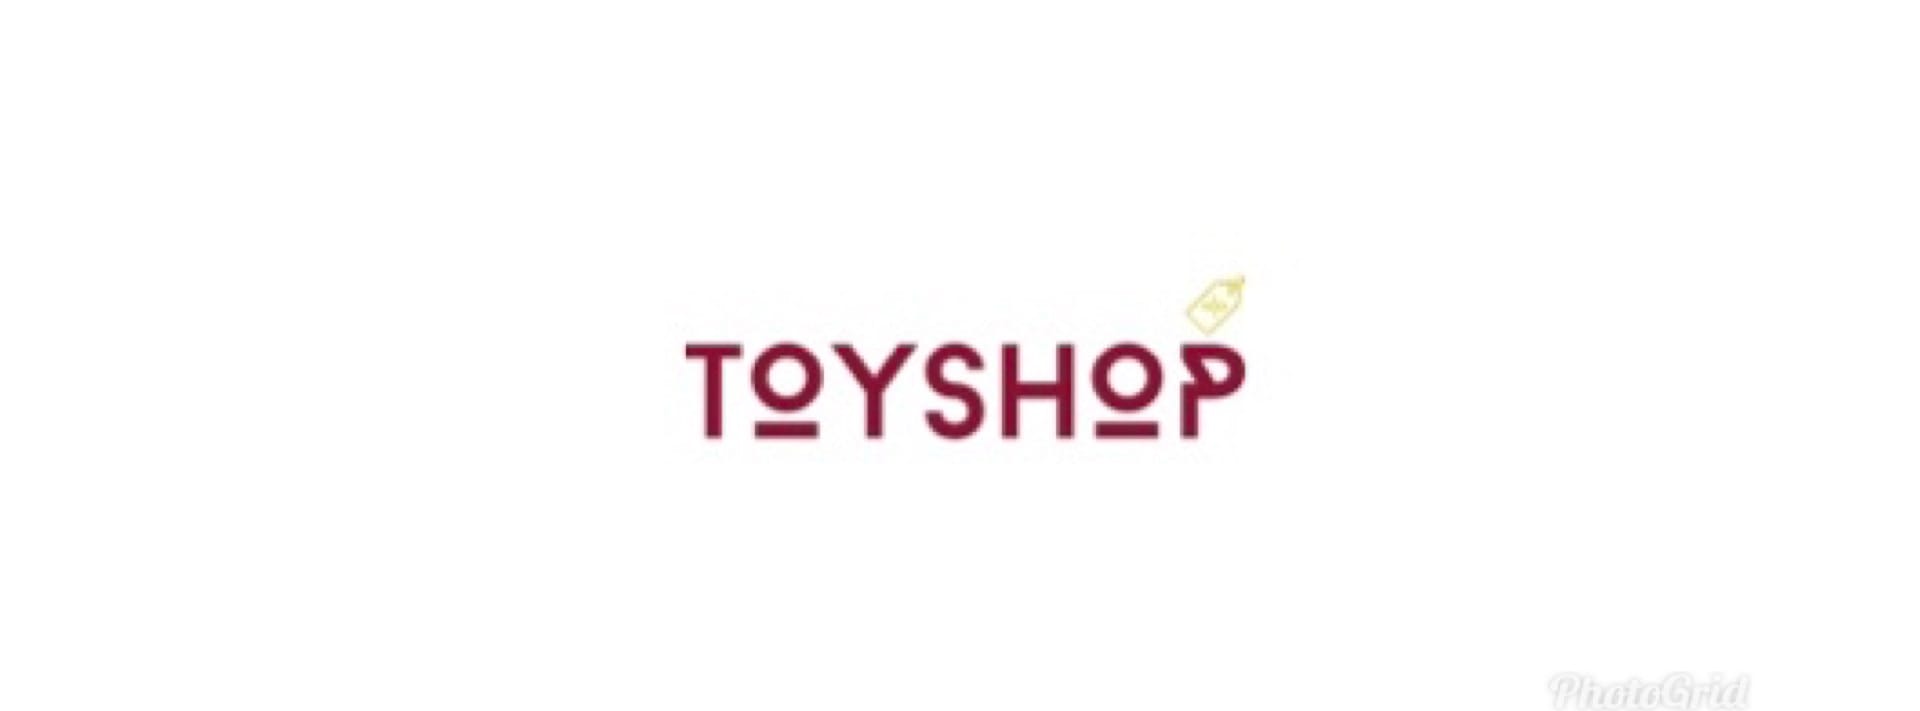 Toyshop